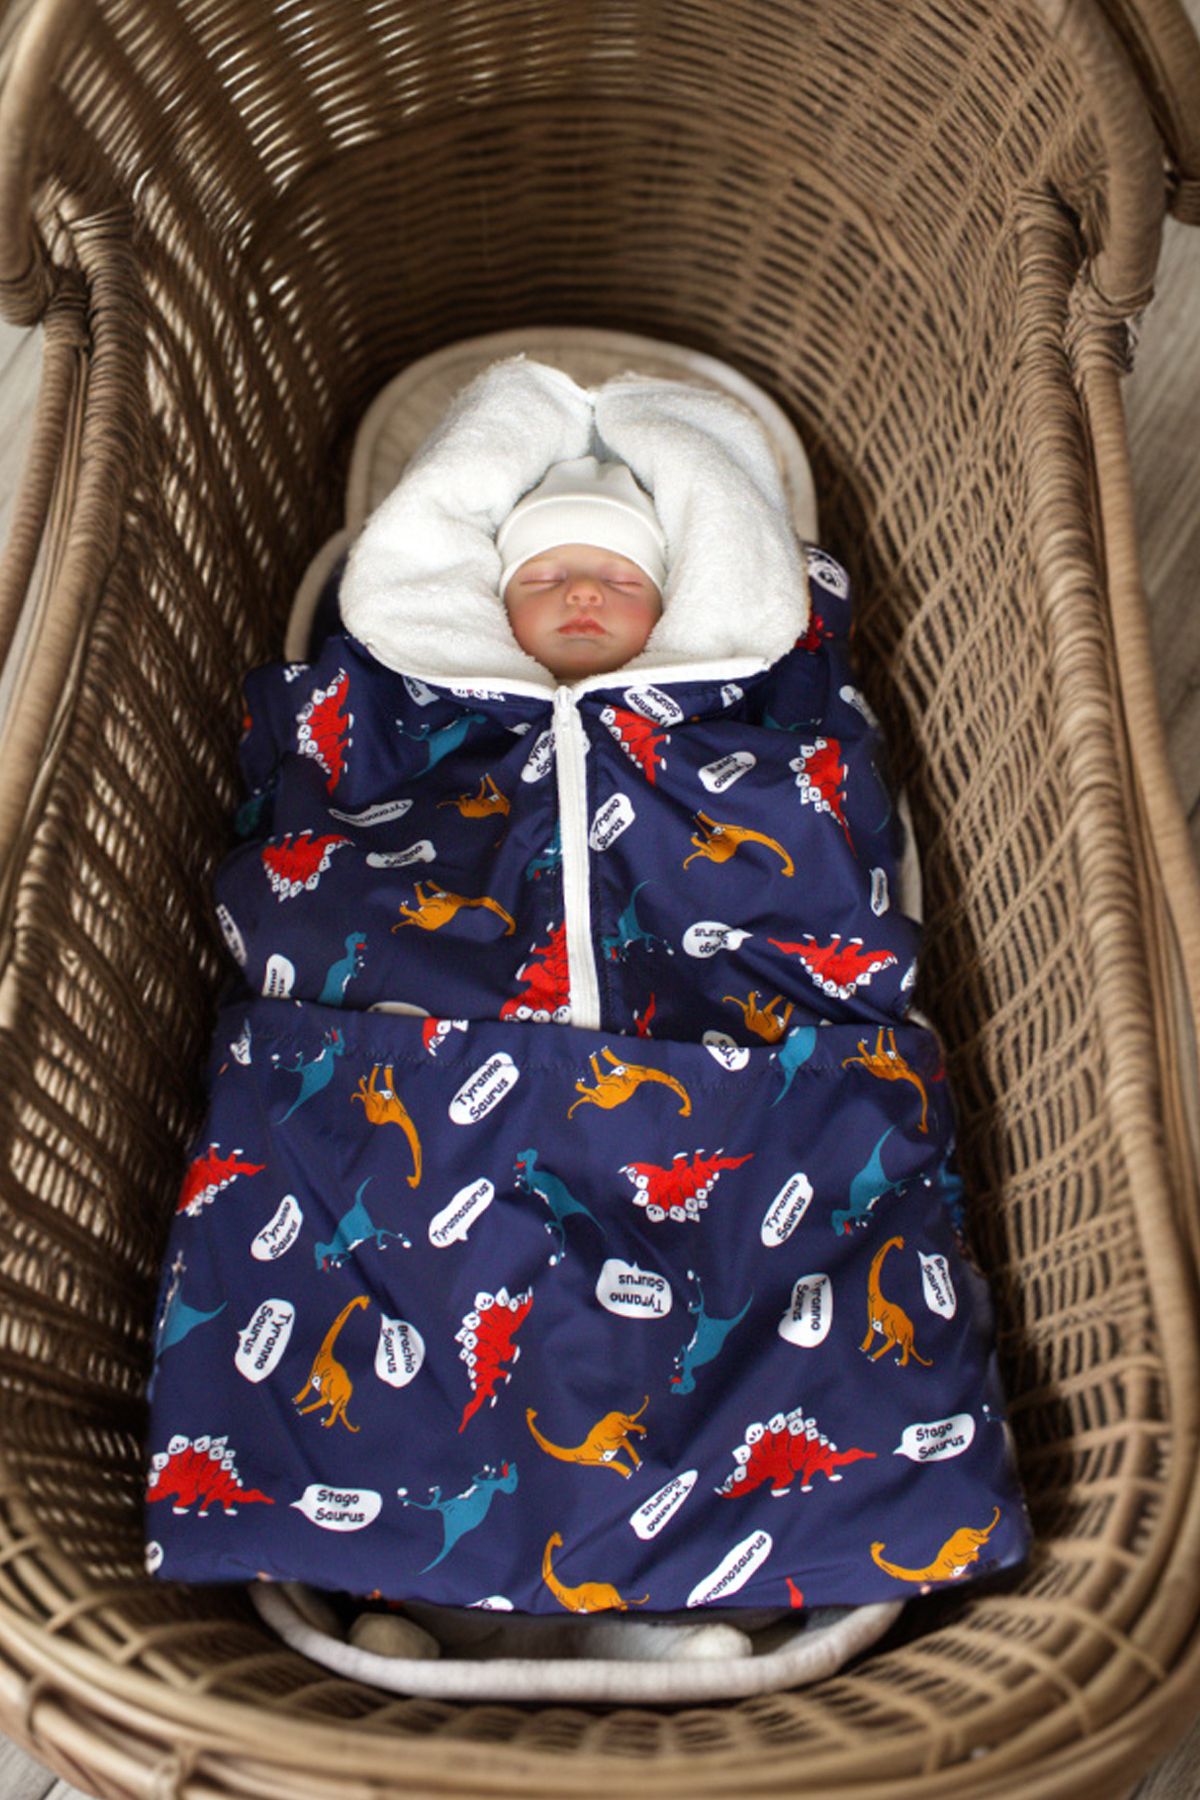 Genel Markalar Bebek Battaniyesi Bebek Kundağı Su Geçirmez Uyku Tulumu Olarak Kullanılabilir!